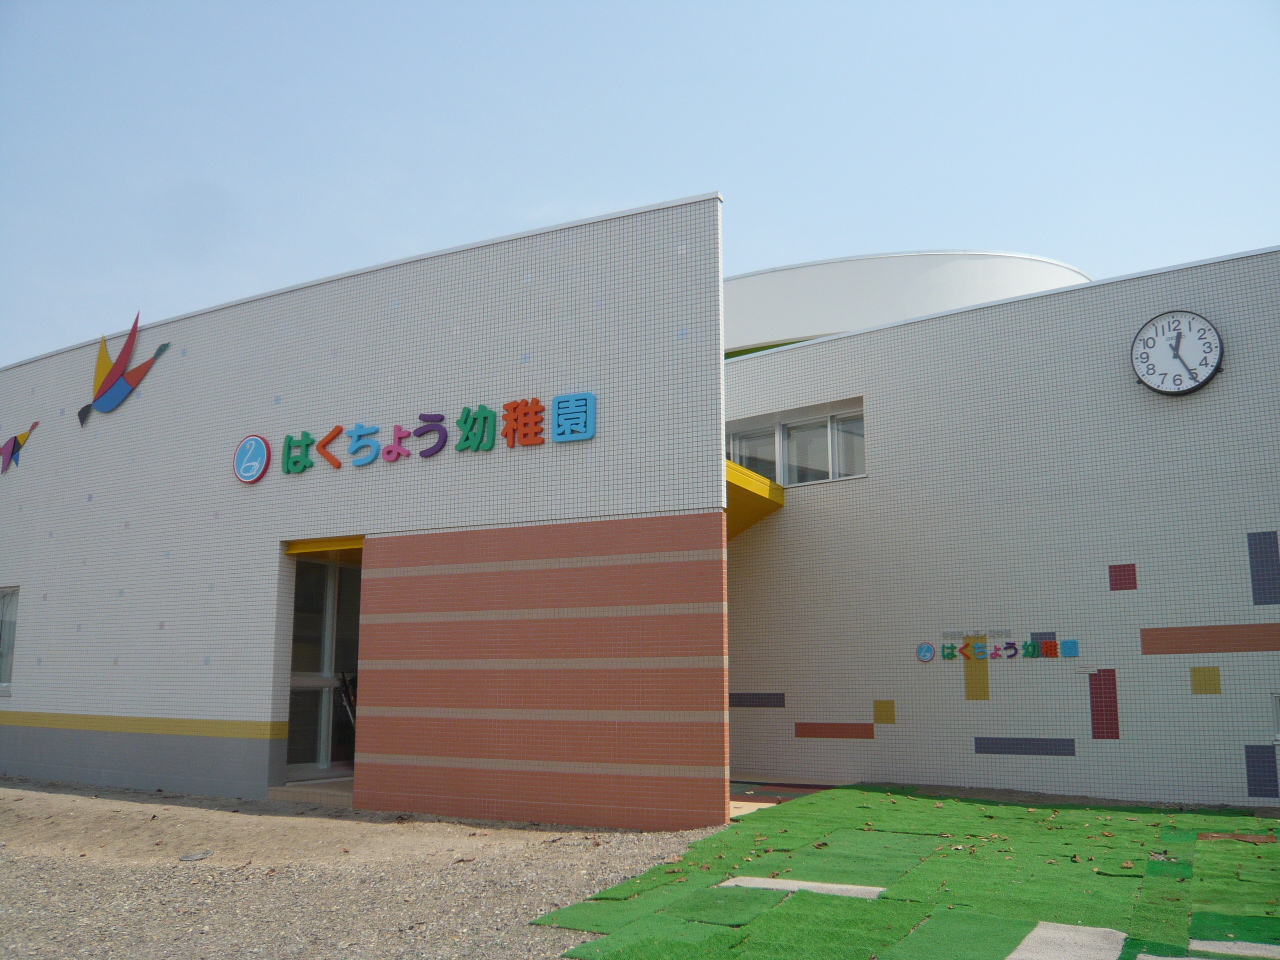 kindergarten ・ Nursery. Swan kindergarten (kindergarten ・ 885m to the nursery)